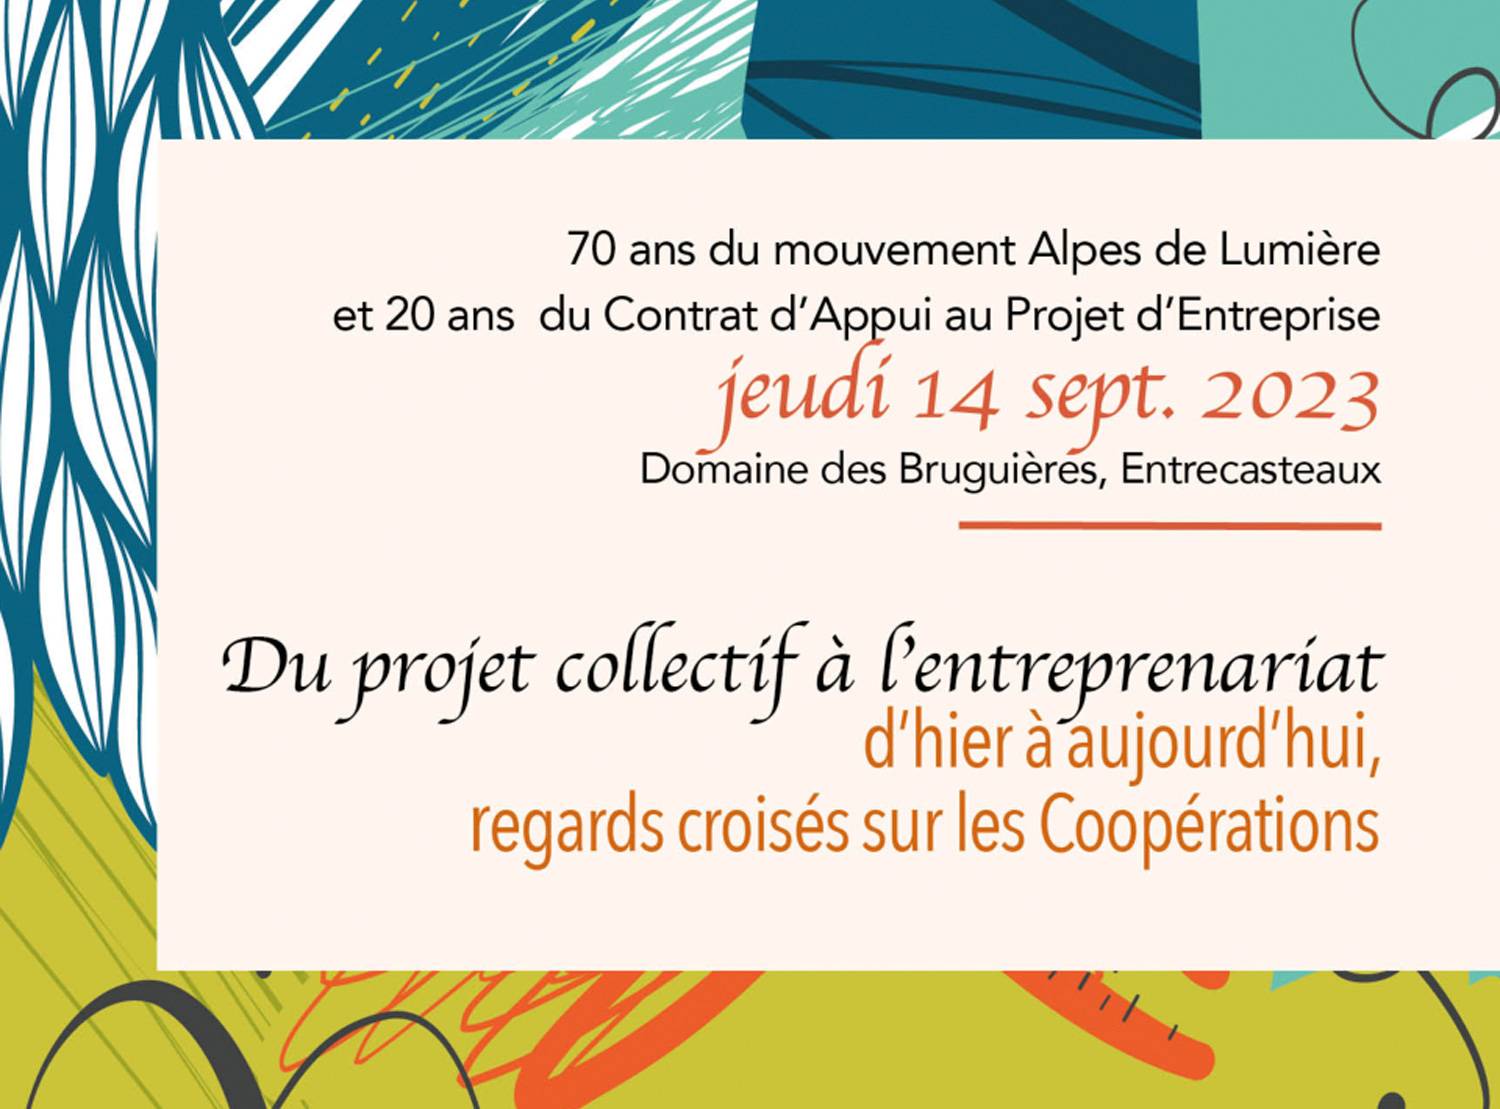 70 ans du mouvement Alpes de lumière et 20 ans du Contrat d’Appui au Projet d’Entreprise